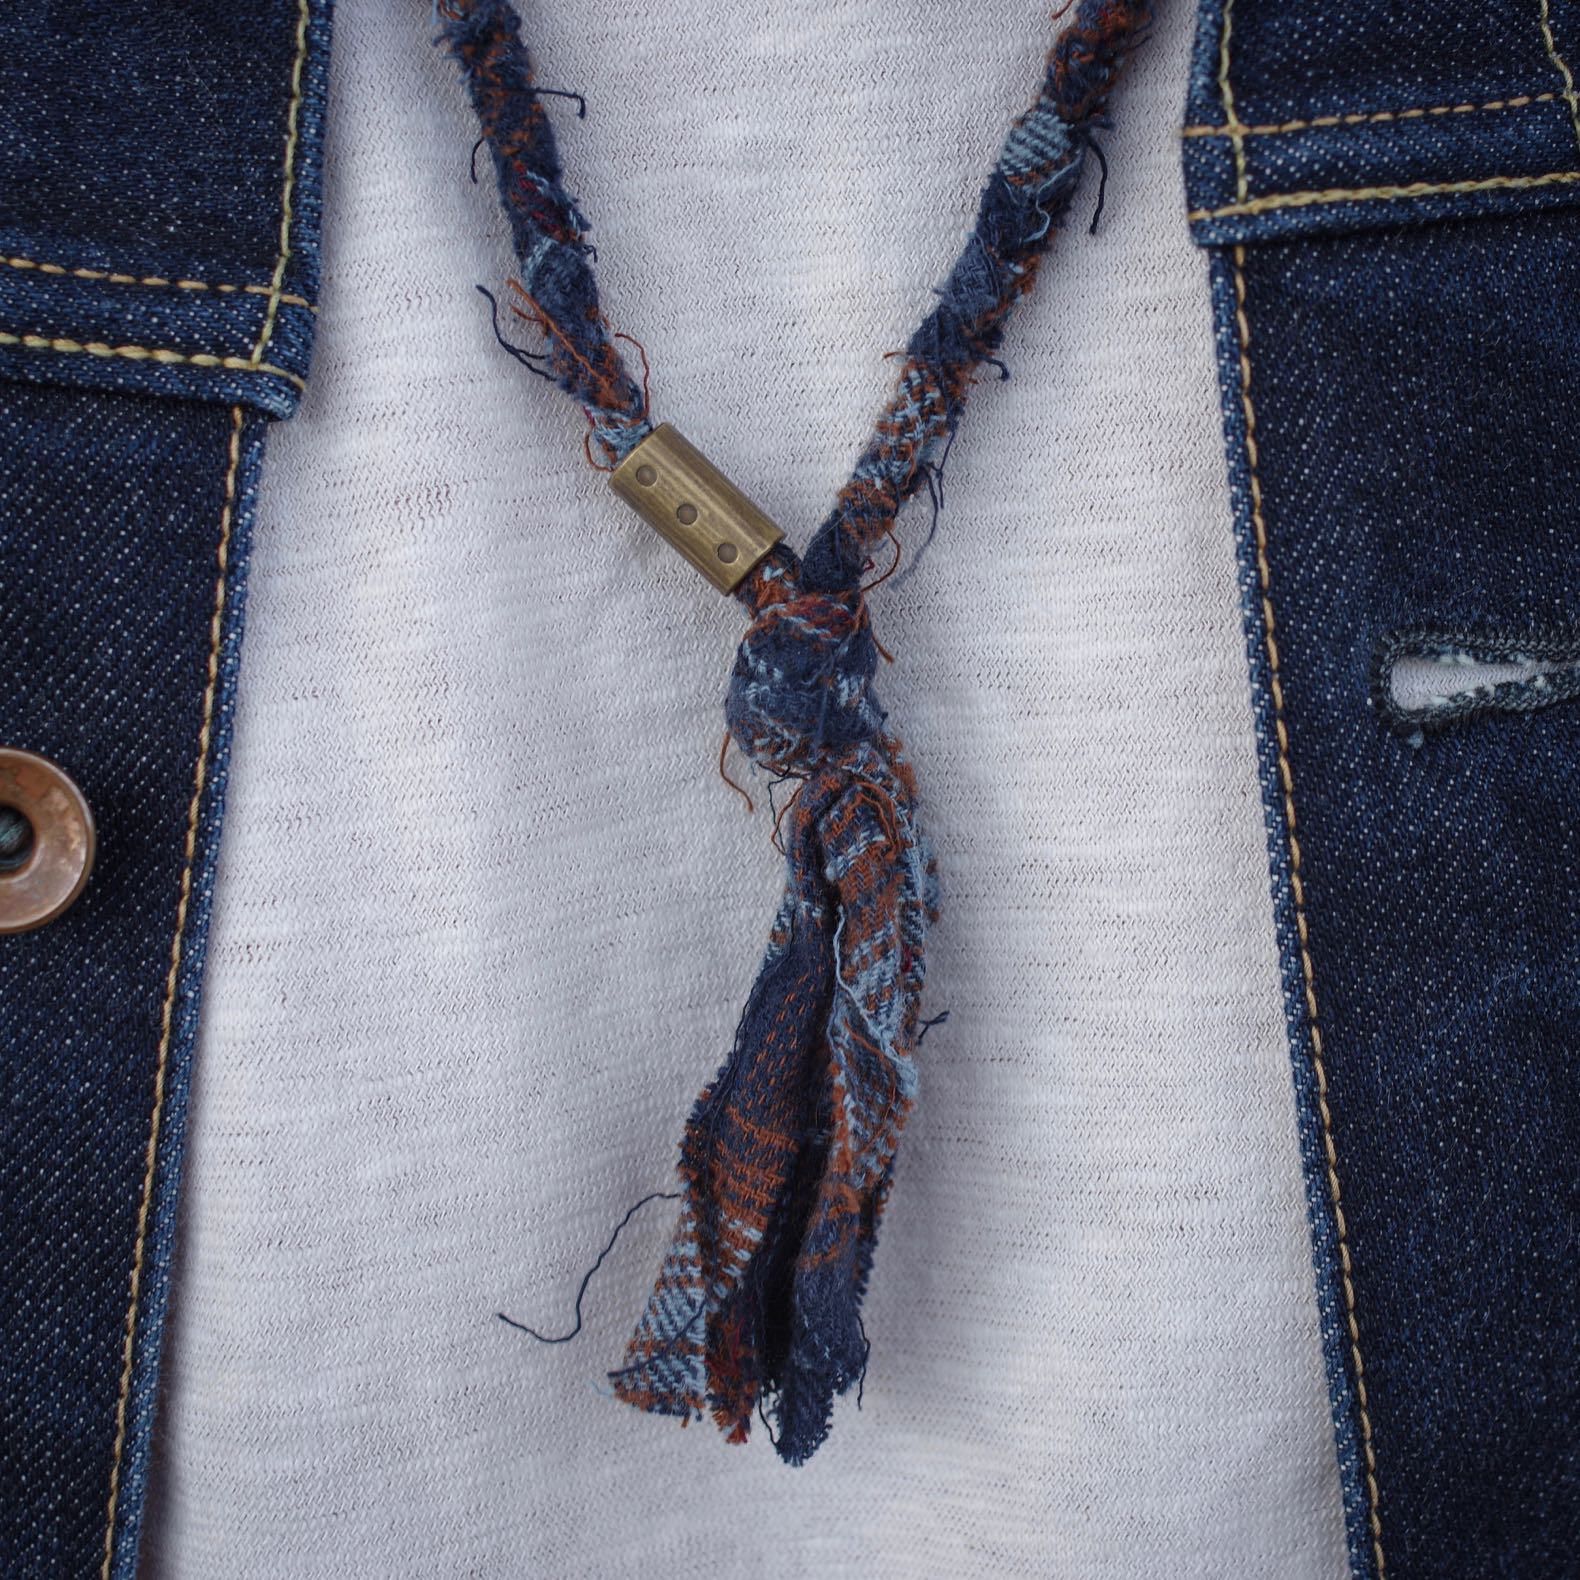 collier de la marque Borali en tissu tressé couleur marron et bleu